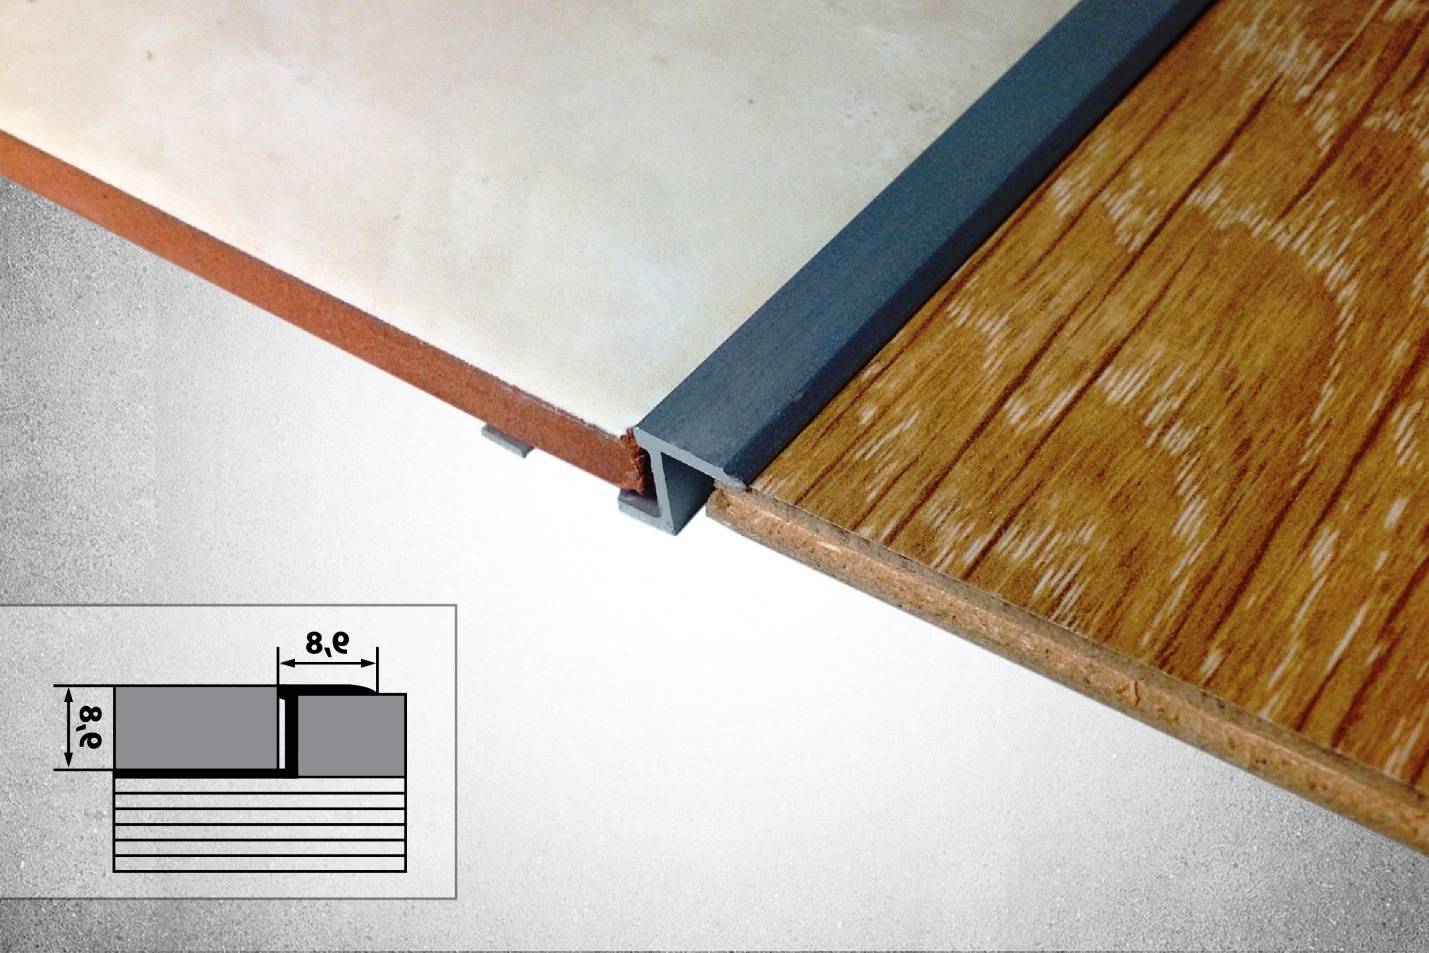 Стык между плиткой и ламинатом: правила комбинирования, пошаговая инструкция стыковки без порожка